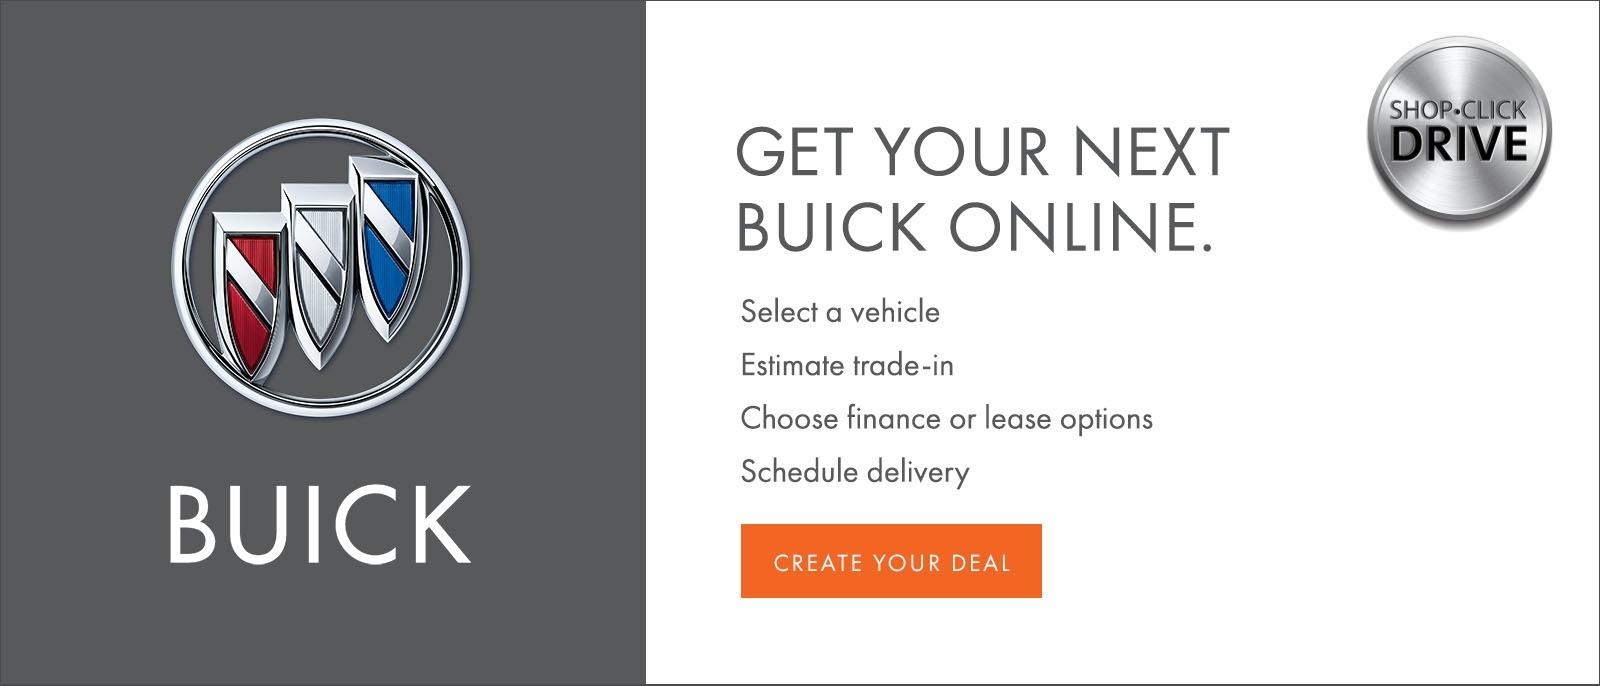 Get Your Next Buick Online.